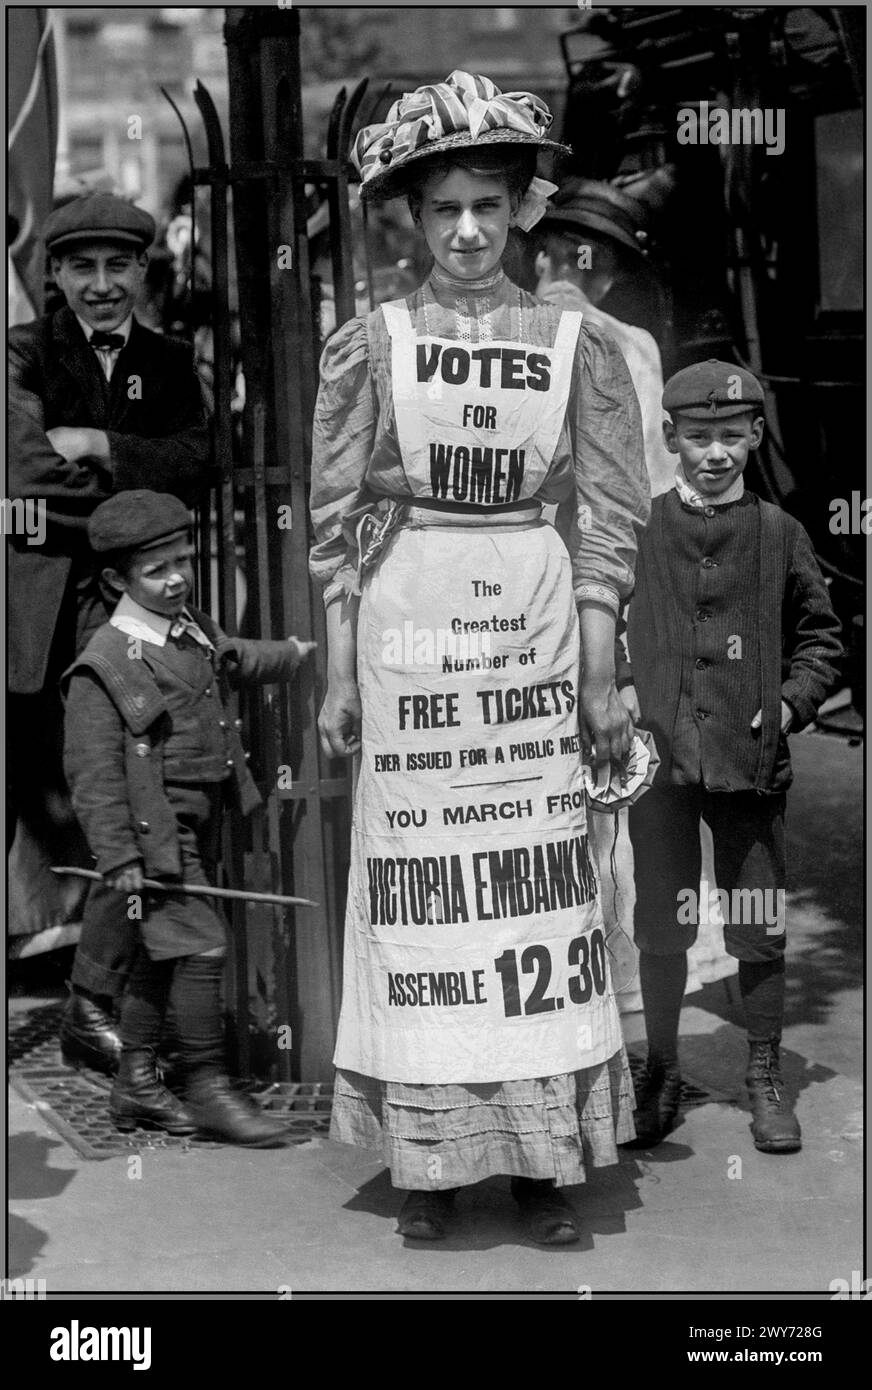 SUFFRAGETTE UK vote pour les femmes London UK Suffragette Movement. 1908 Vera Wentworth dans le Strand London portant un tablier de servantes avec «VOTES FOR WOMEN» promouvant une marche pour le suffrage de Victoria Embankment London.from 12,30 pm Banque D'Images